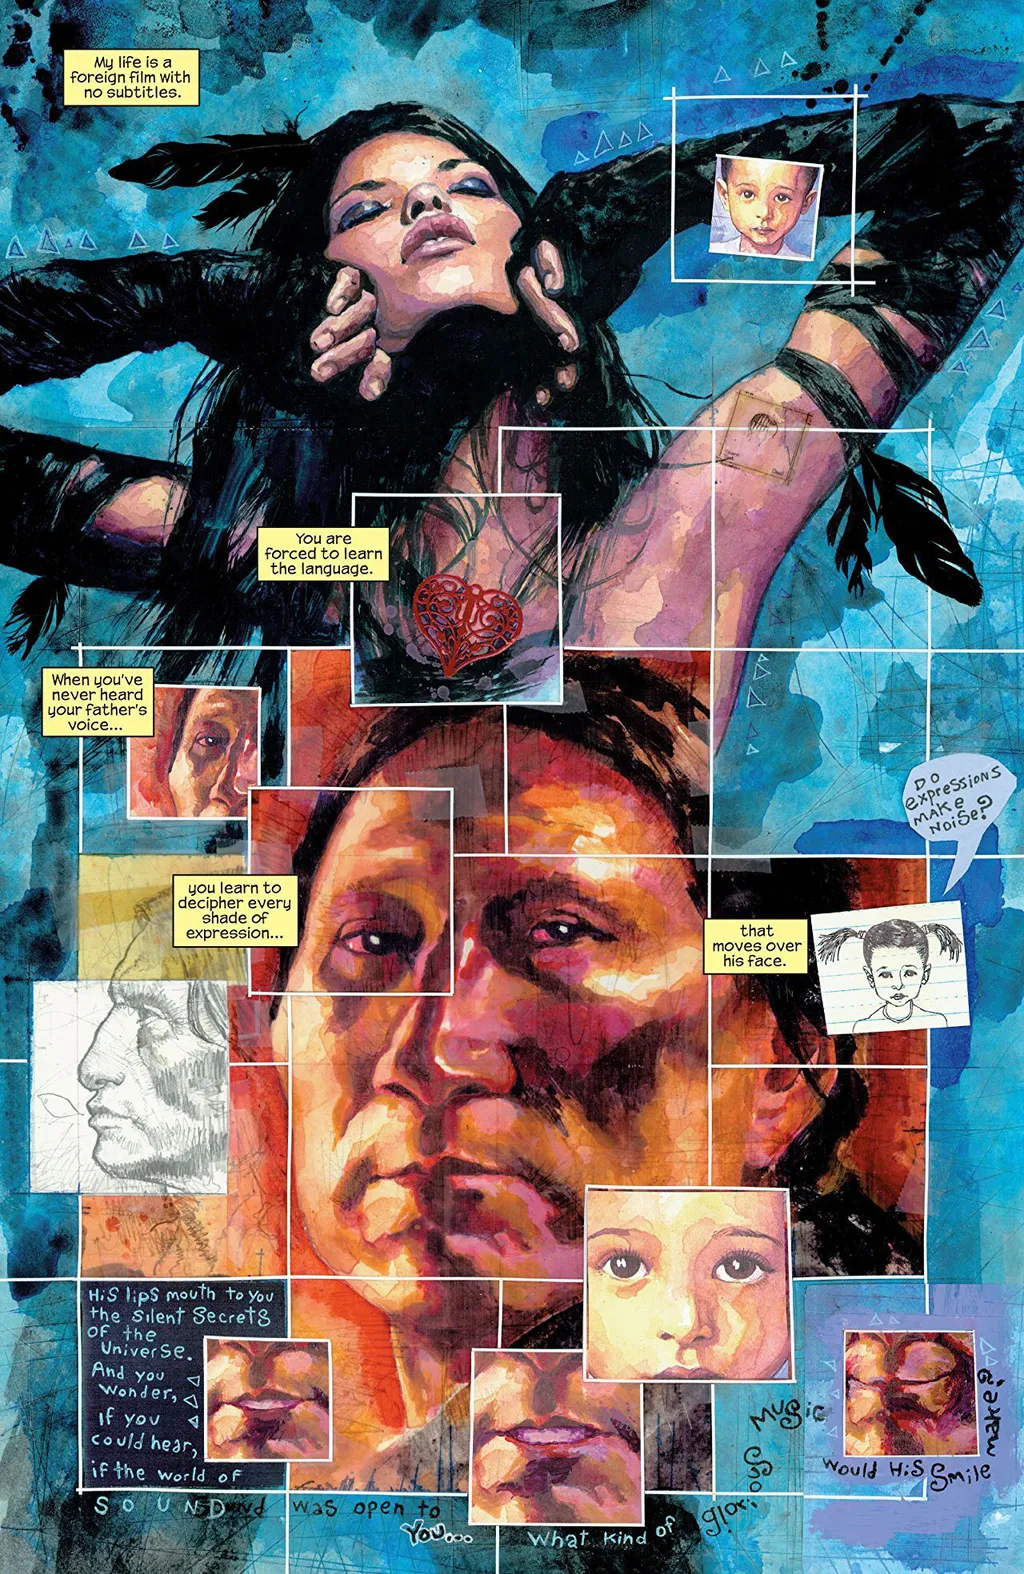 Os elementos nativo-americanos são bem presentes nesse arco de autodescoberta de Maya (Imagem: Reprodução/Marvel Comics)